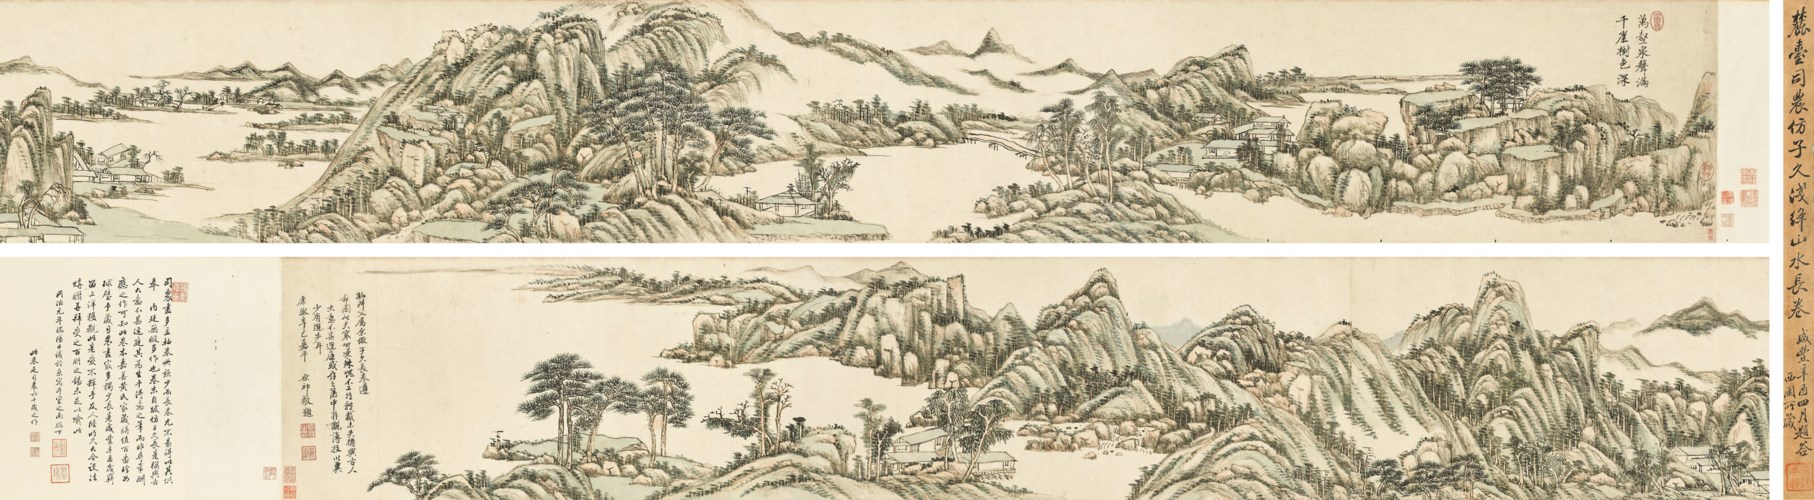 WANG YUANQI (1642-1715)